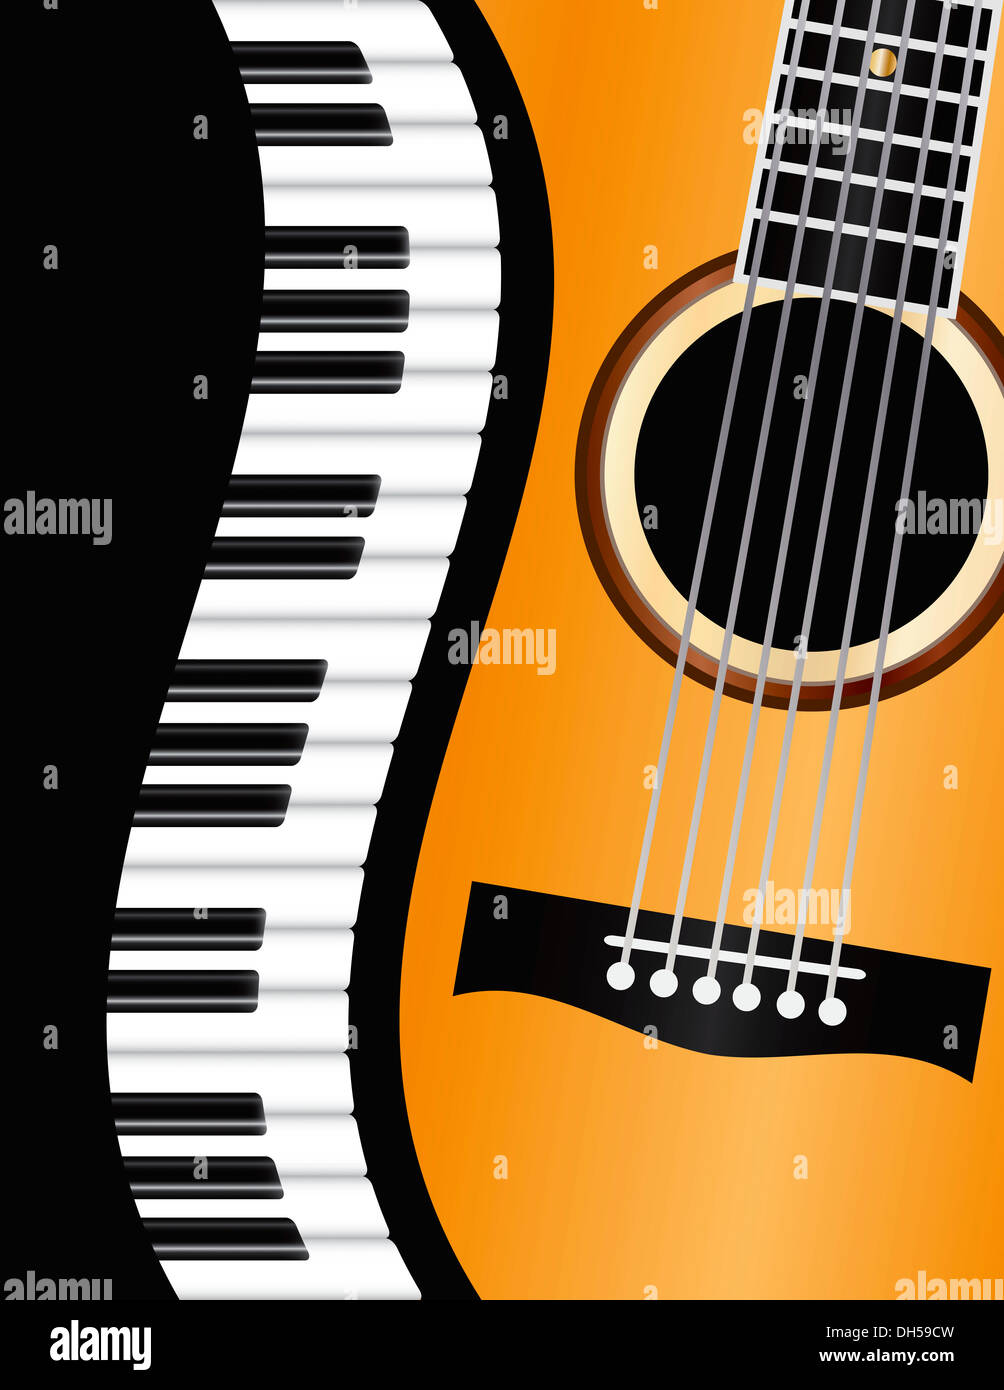 Piano y guitarra fotografías e imágenes de alta resolución - Alamy